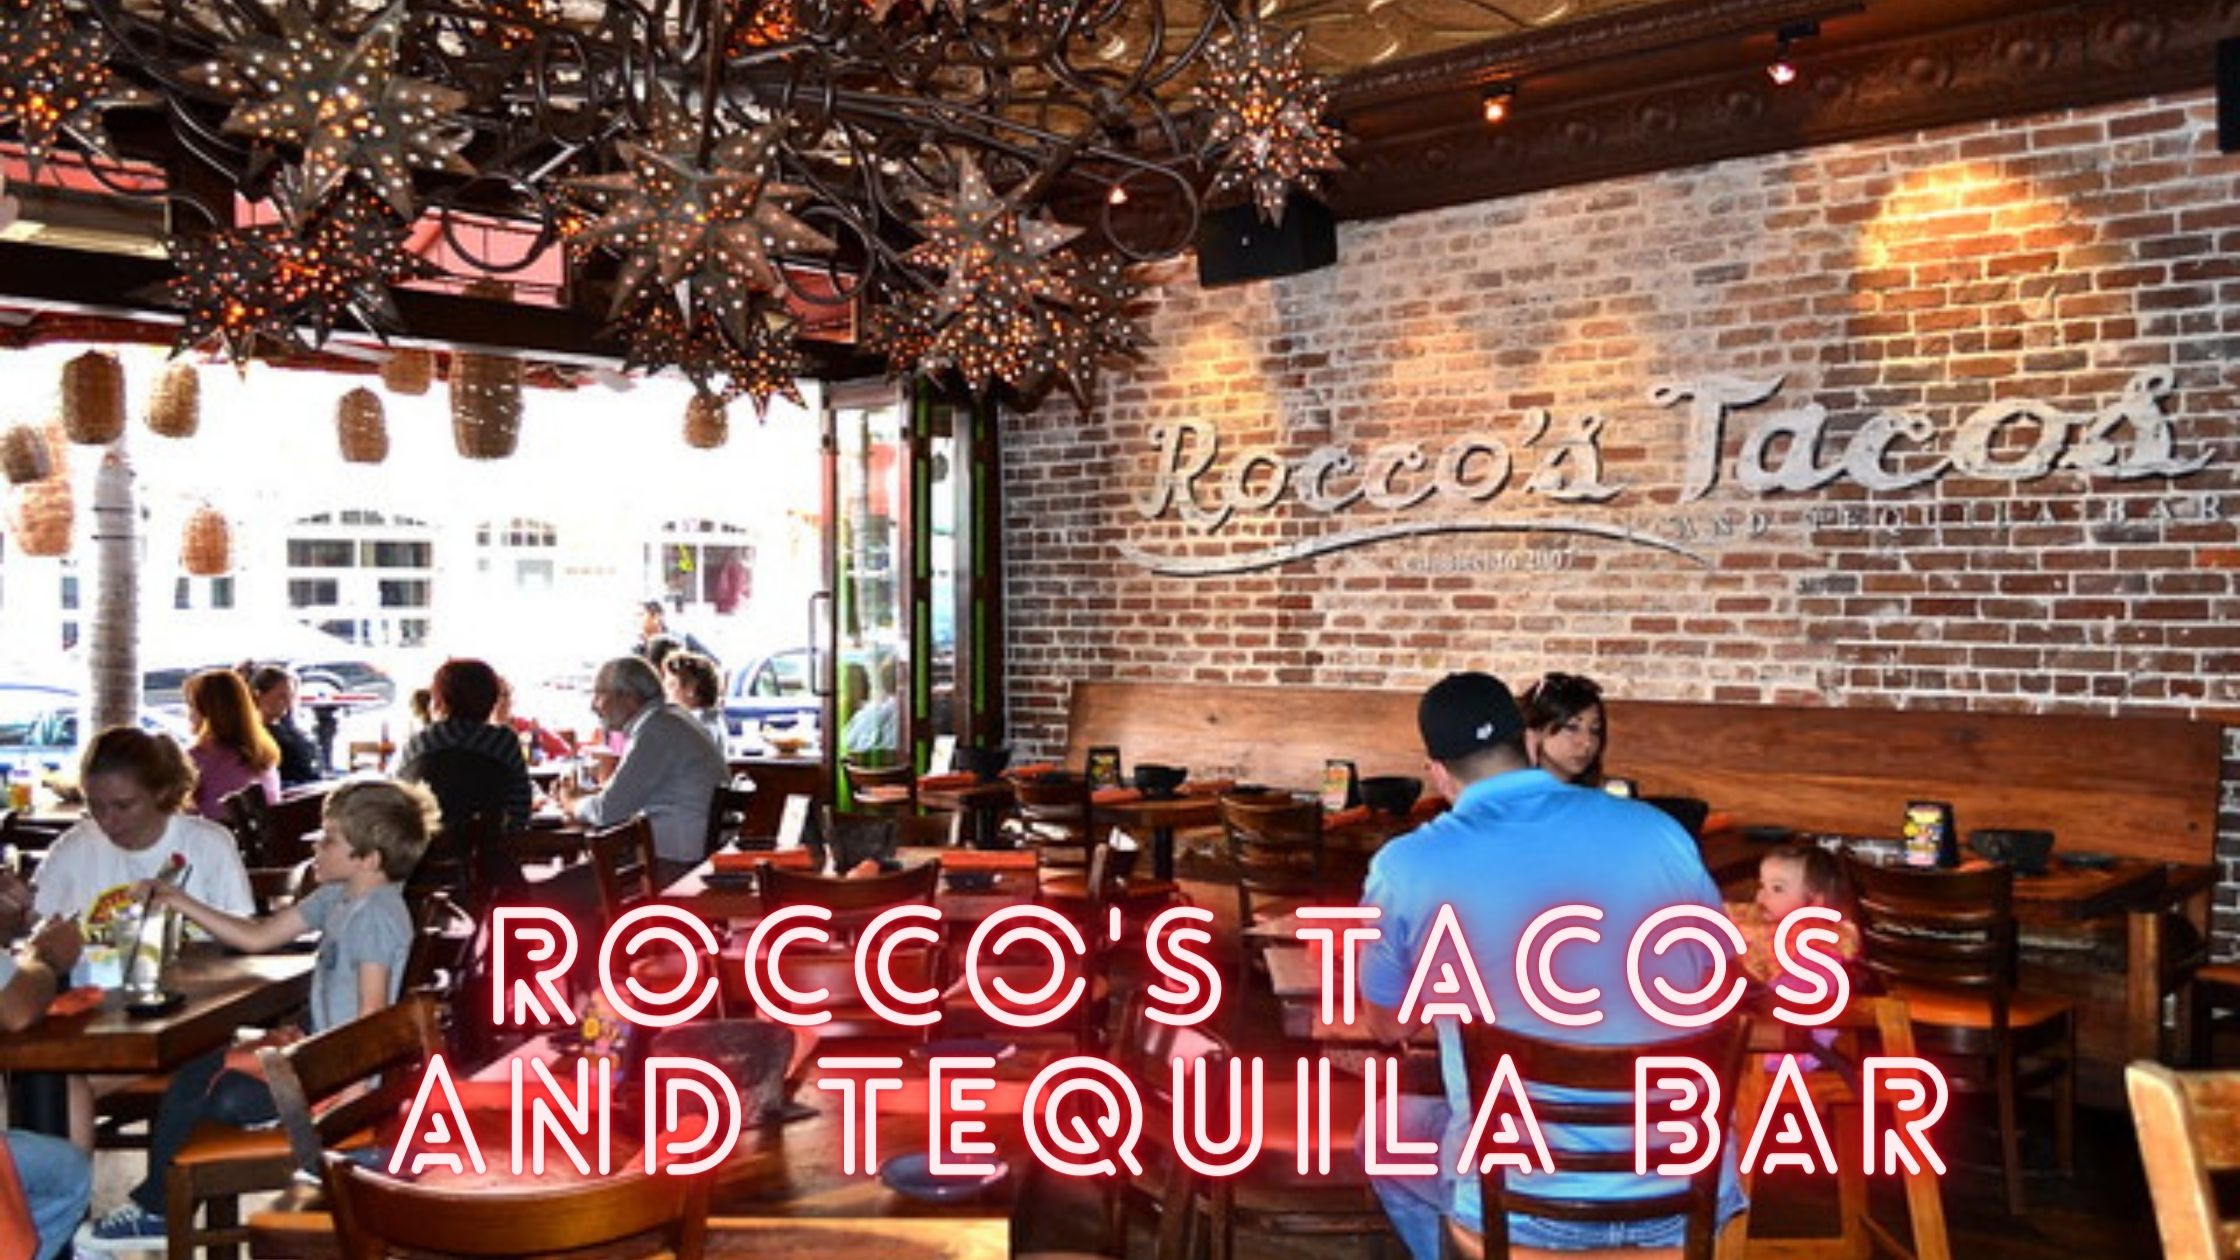 Rocco's Tacos